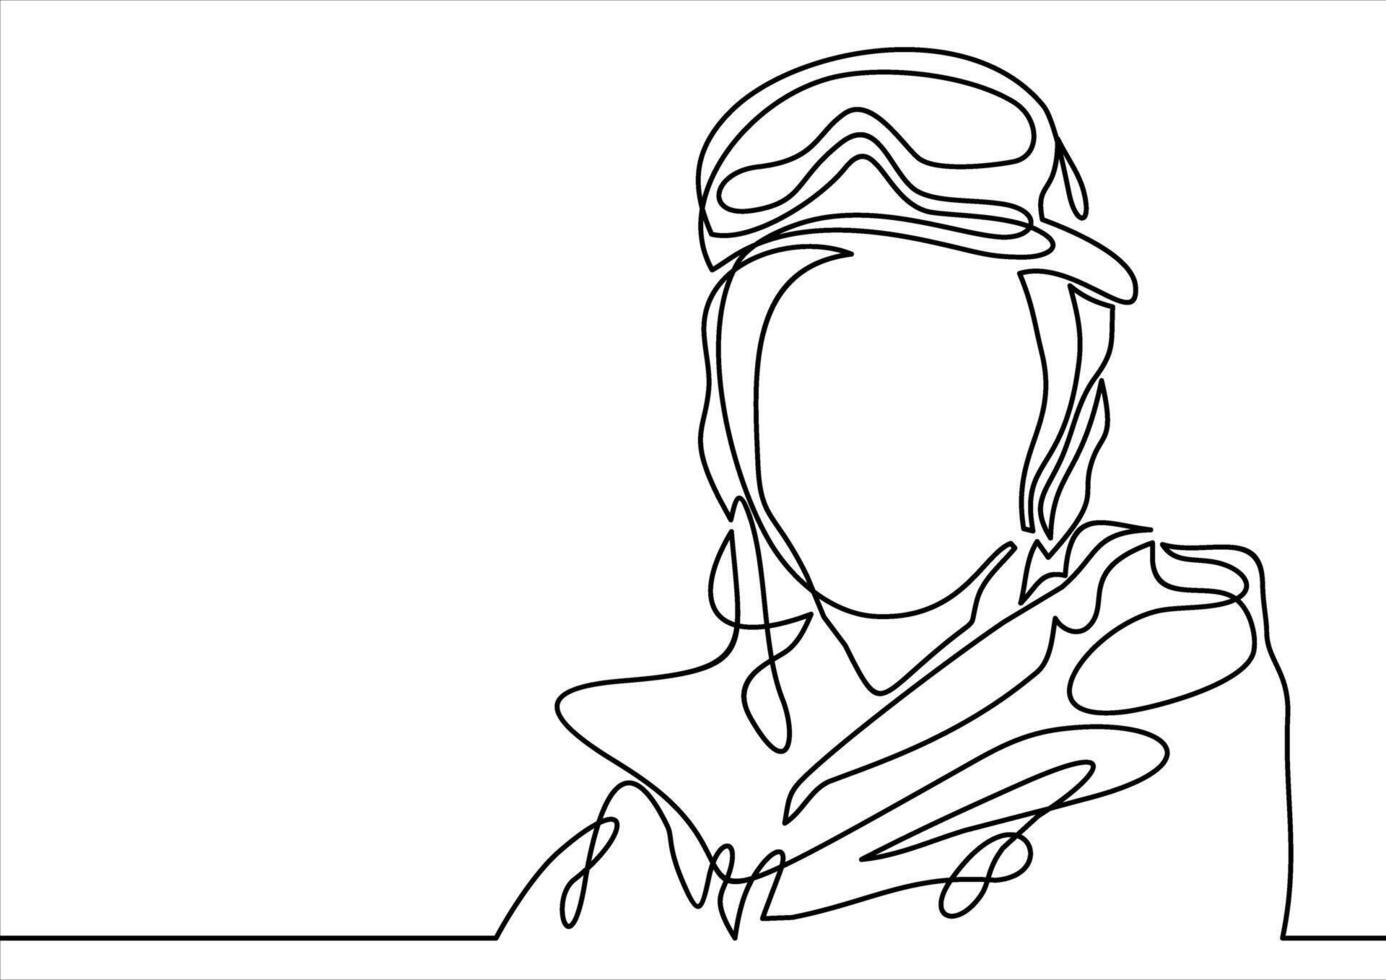 Snowboarder Kopf- kontinuierlich Linie Zeichnung vektor